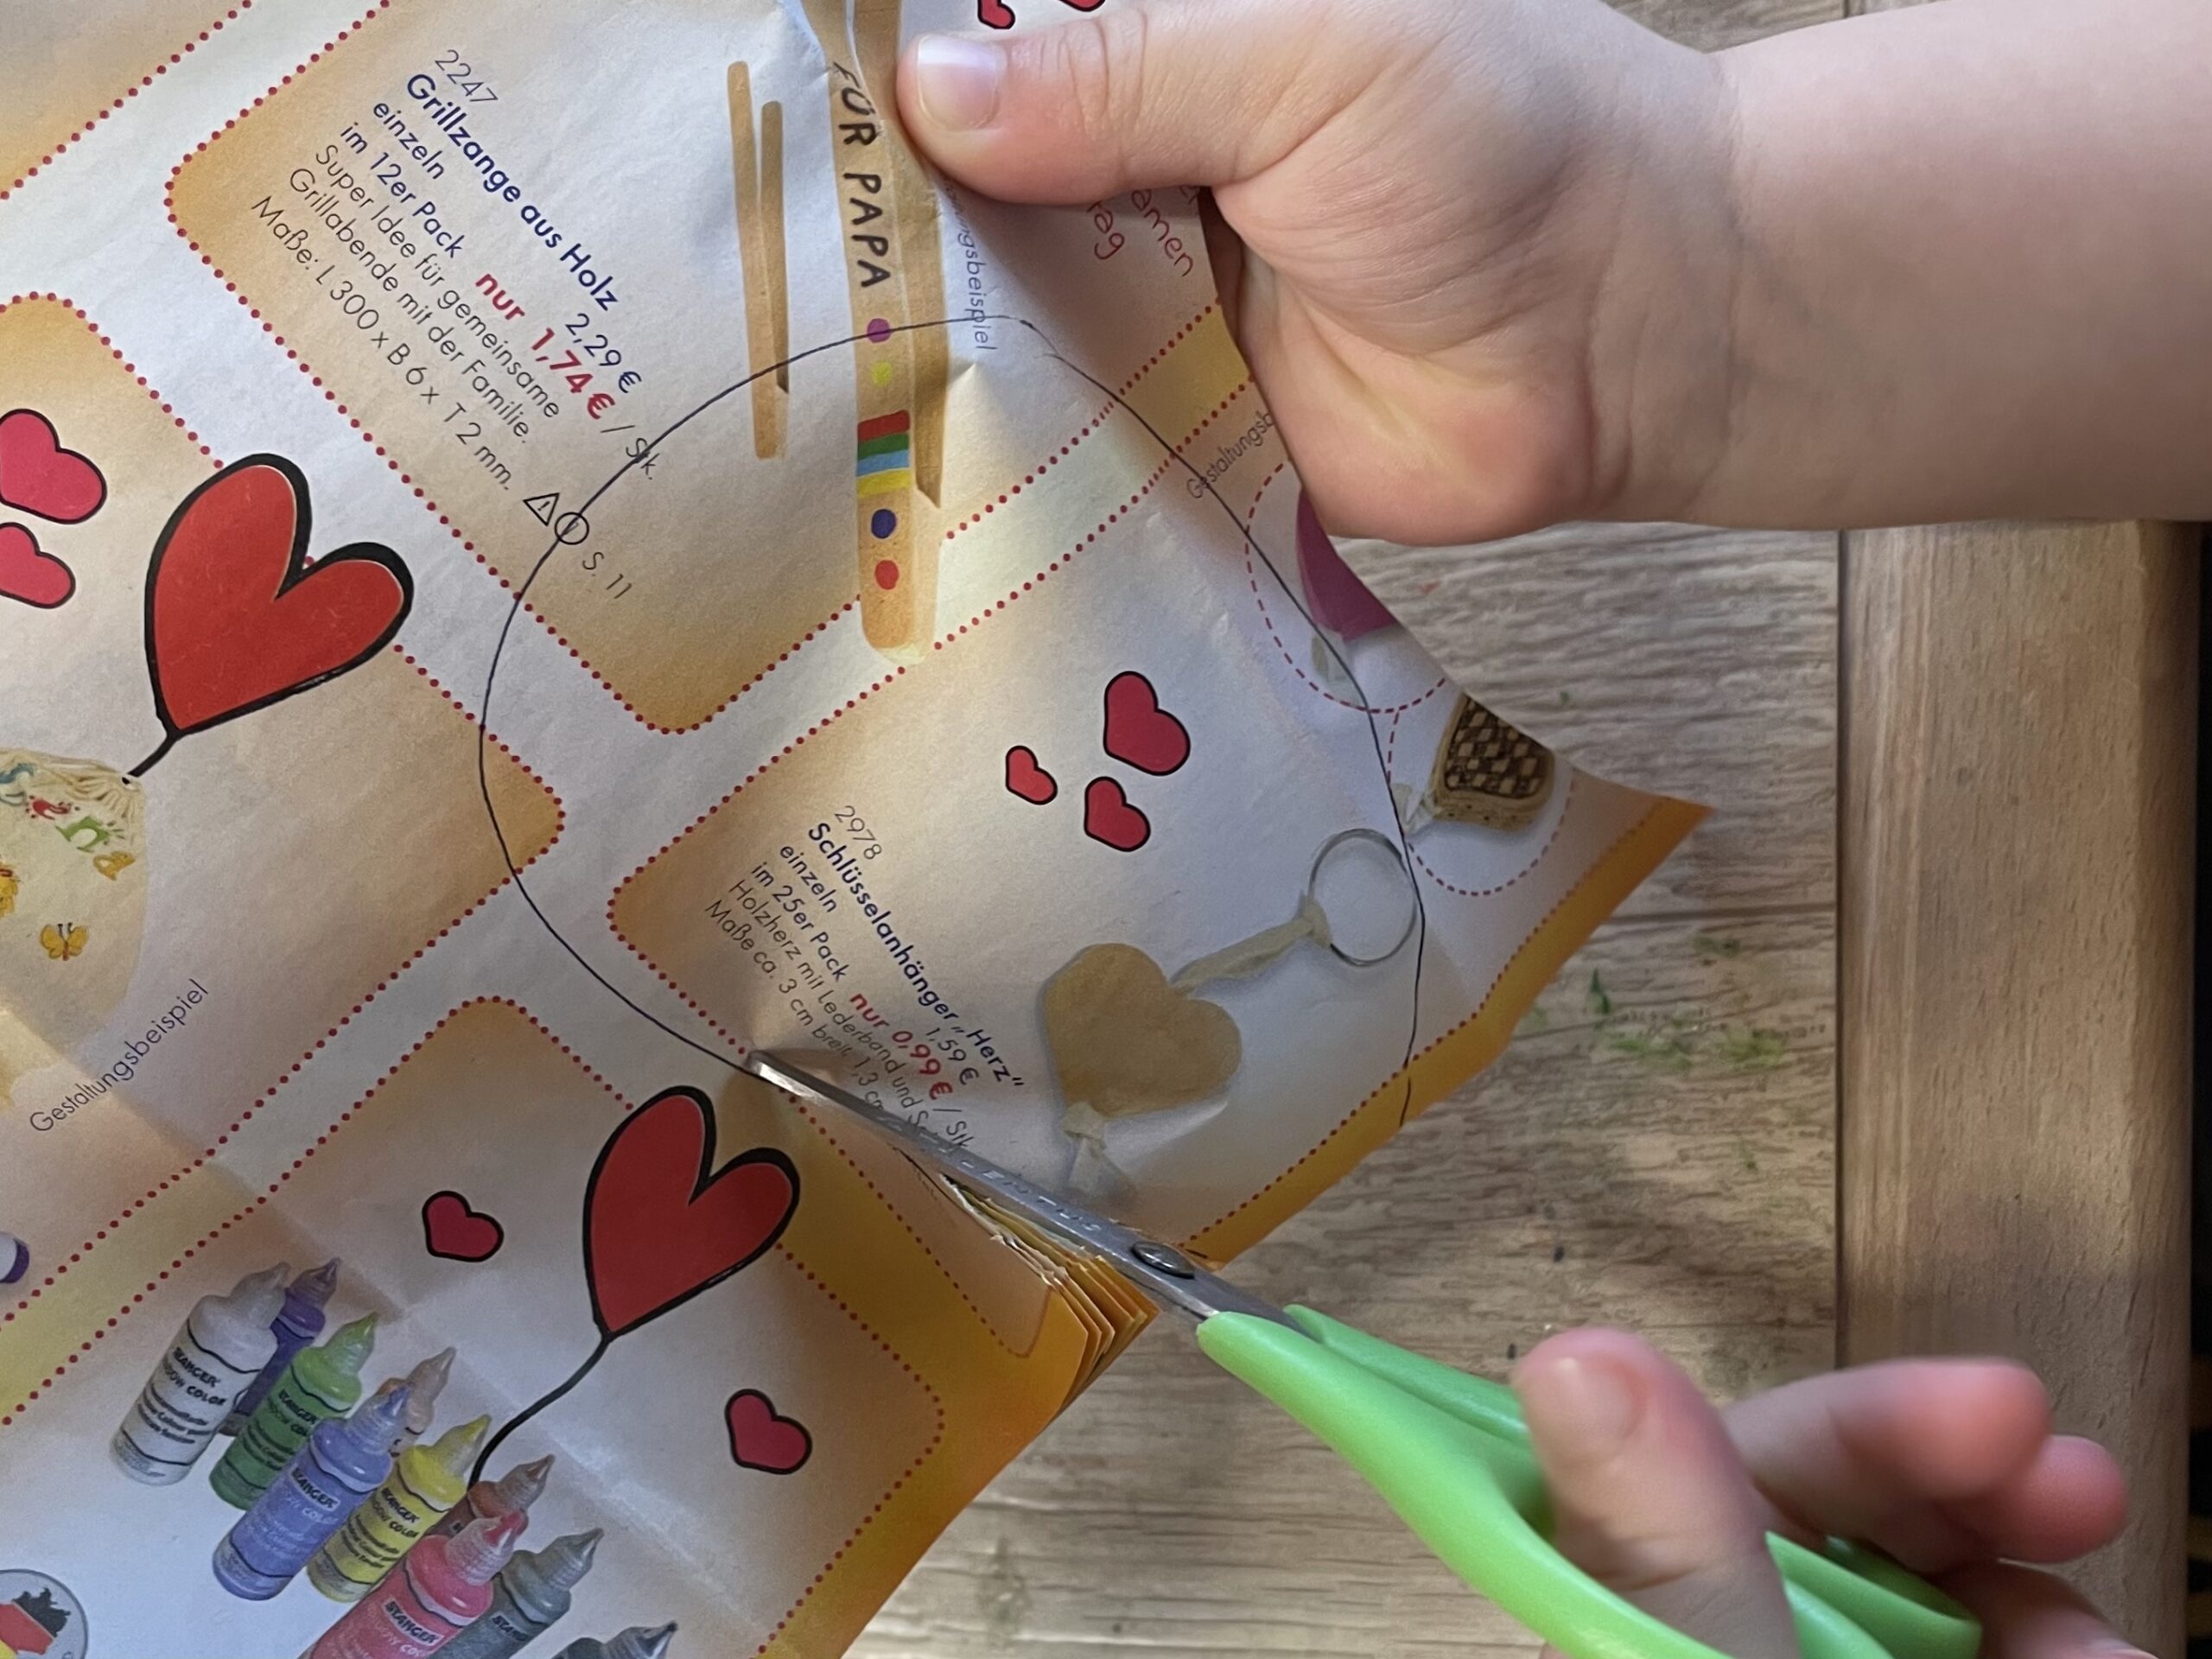 Bild zum Schritt 3 für das Bastel- und DIY-Abenteuer für Kinder: 'Ihr könnt das Papier auch falten, so könnt ihr gleich...'